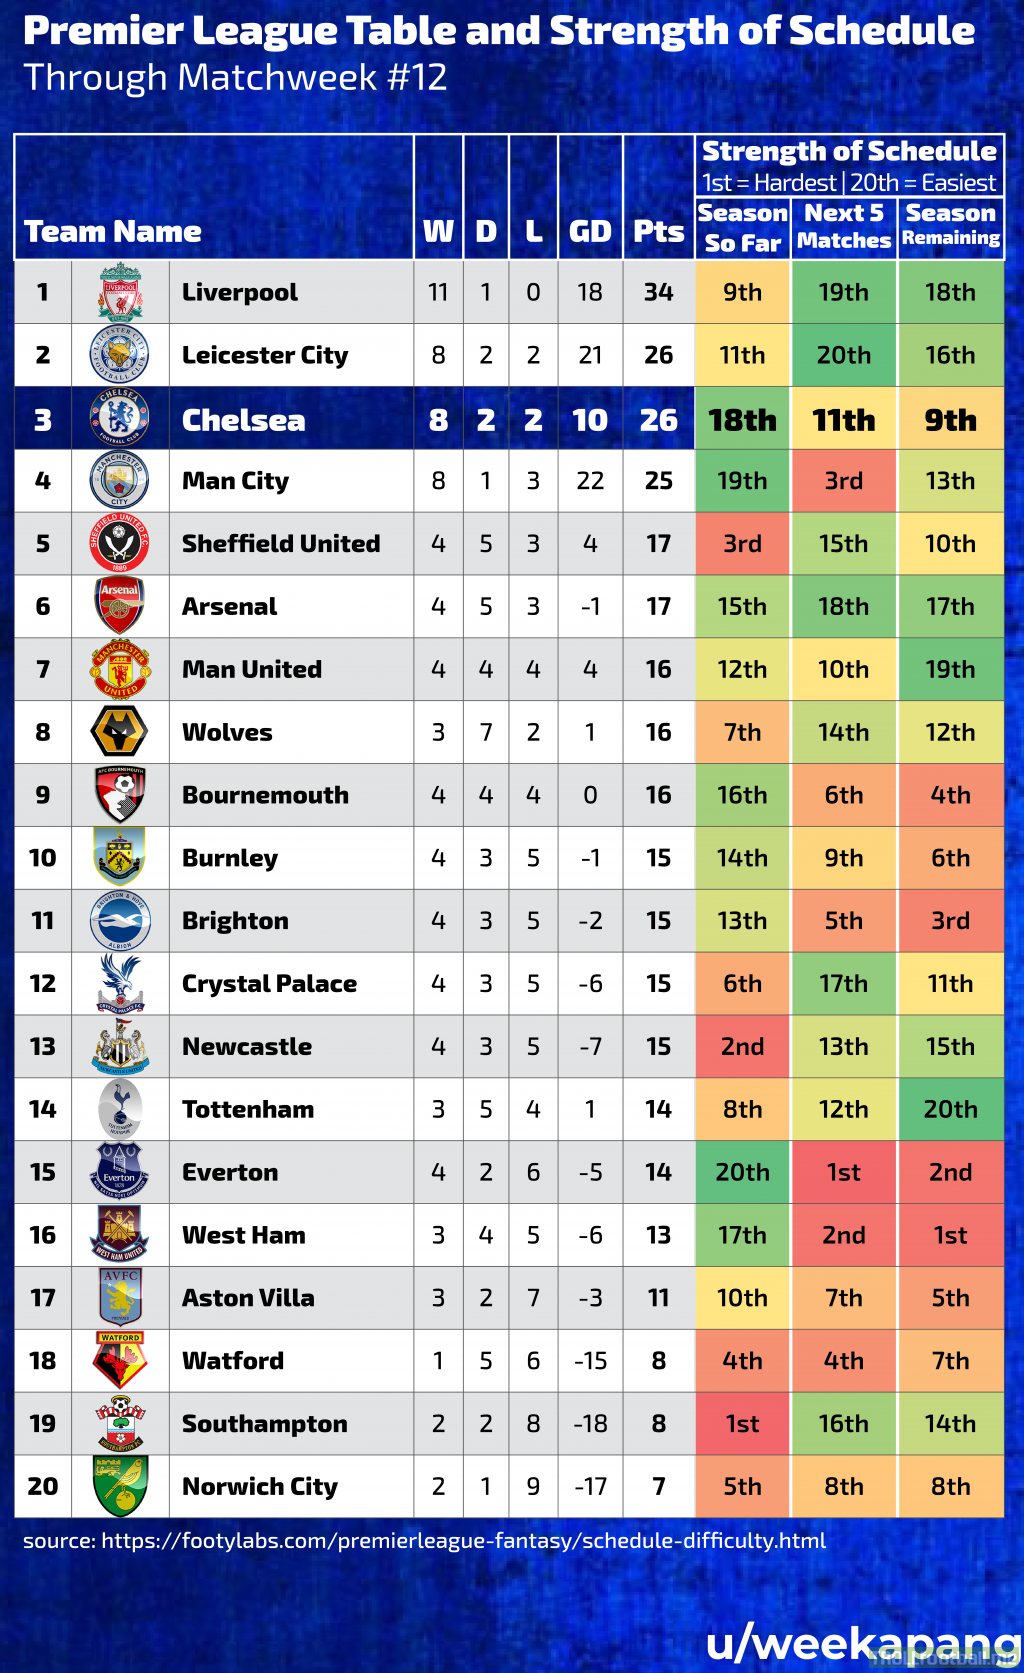 OC Premier League Standings / Strength of Schedule through Matchweek